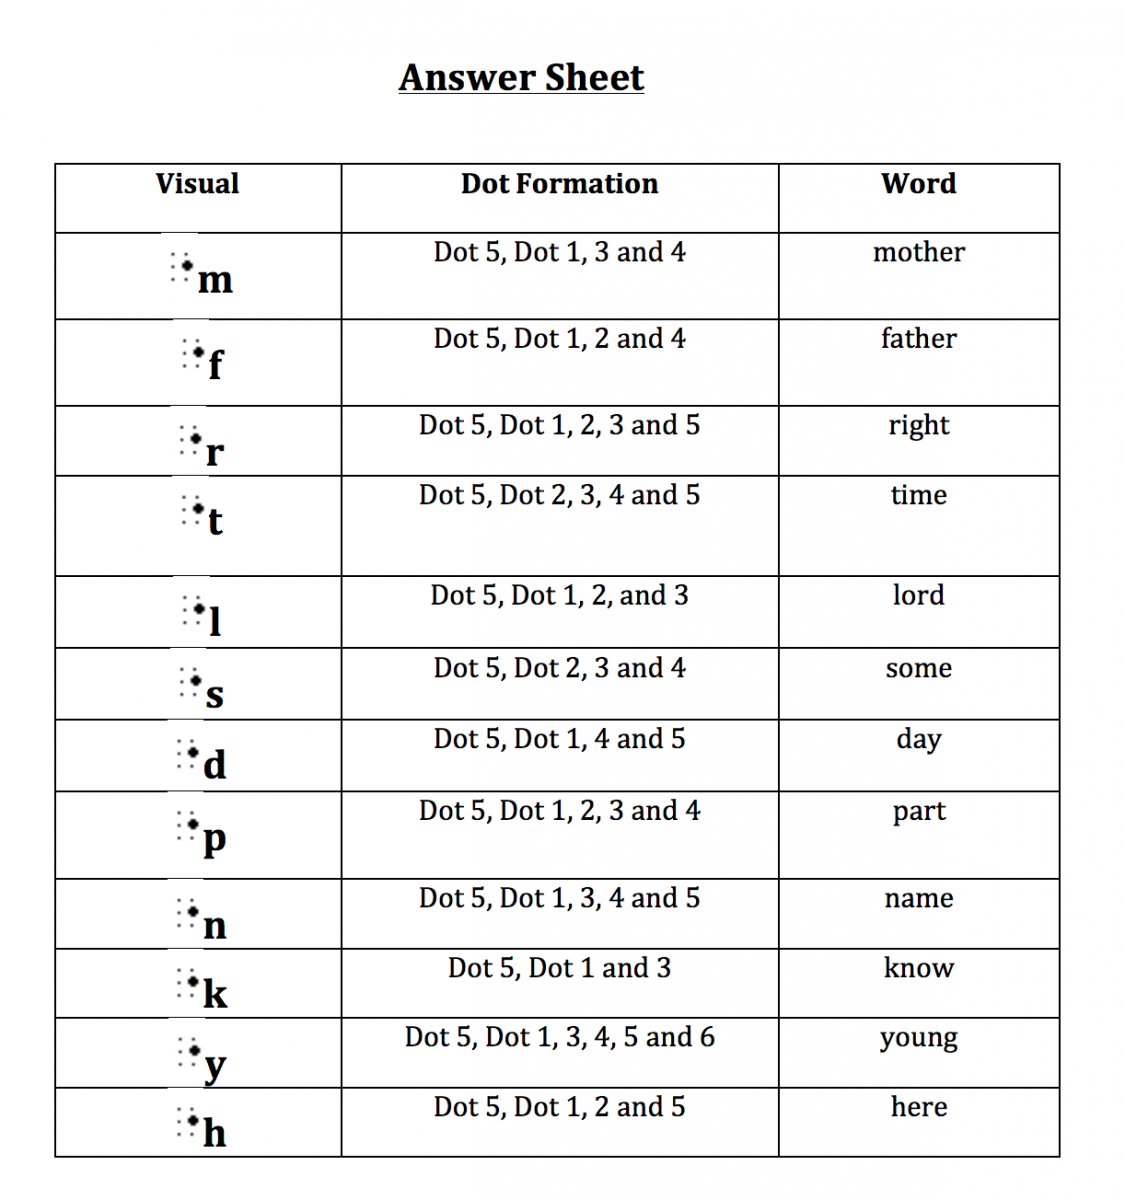 Answer sheet